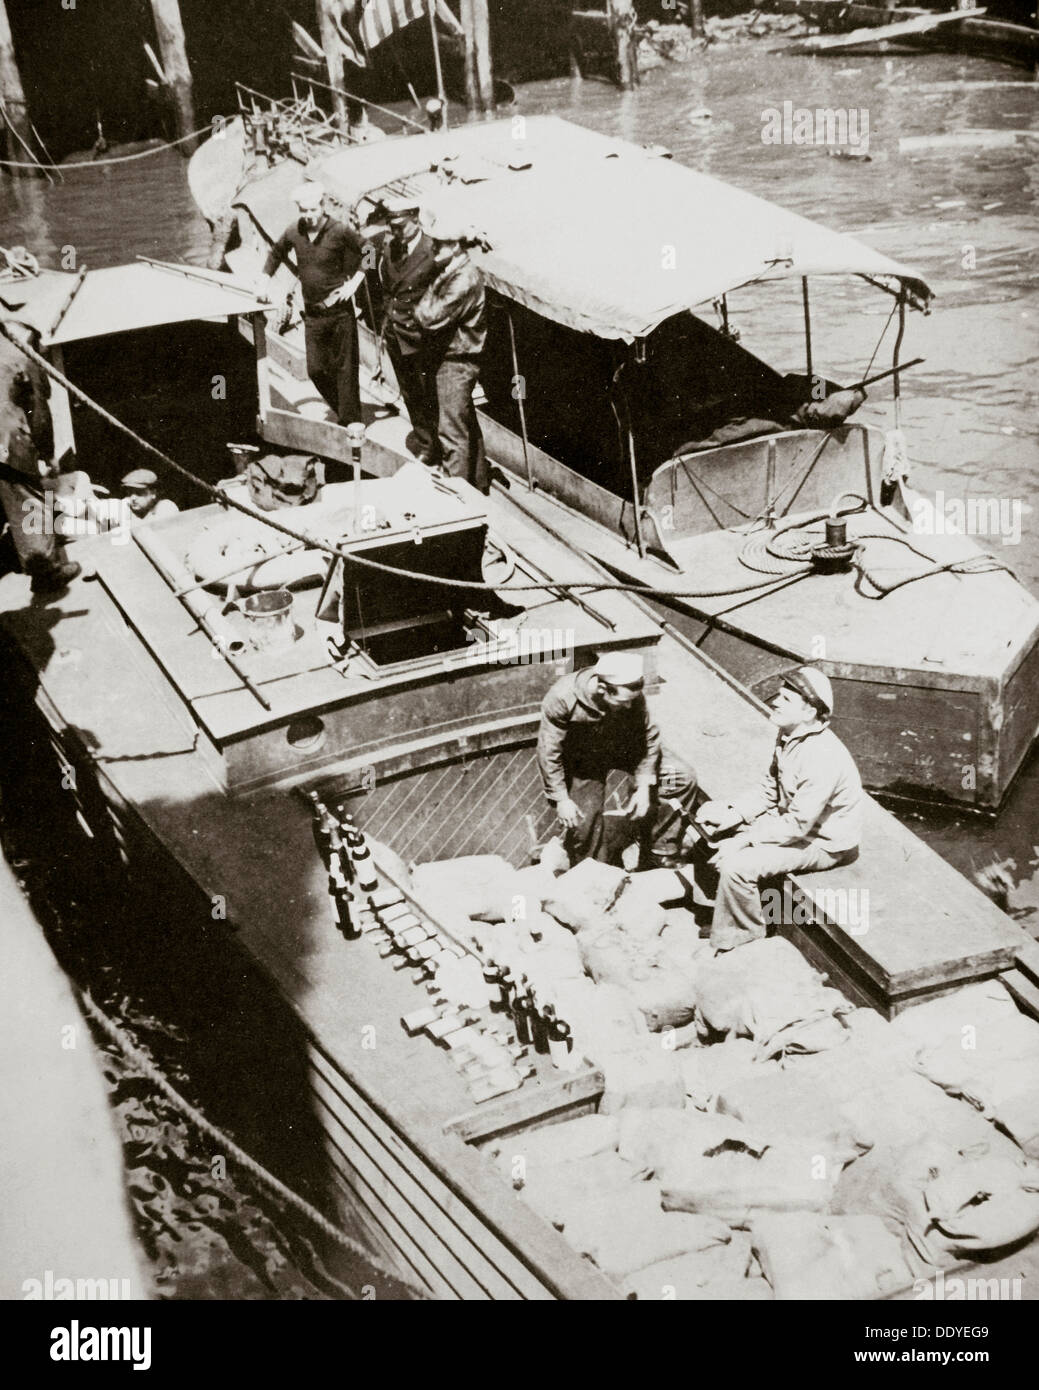 Ein Rum-Running Boot gefangen Schmuggel in 2000 Flaschen, USA, 1920er Jahre. Künstler: unbekannt Stockfoto